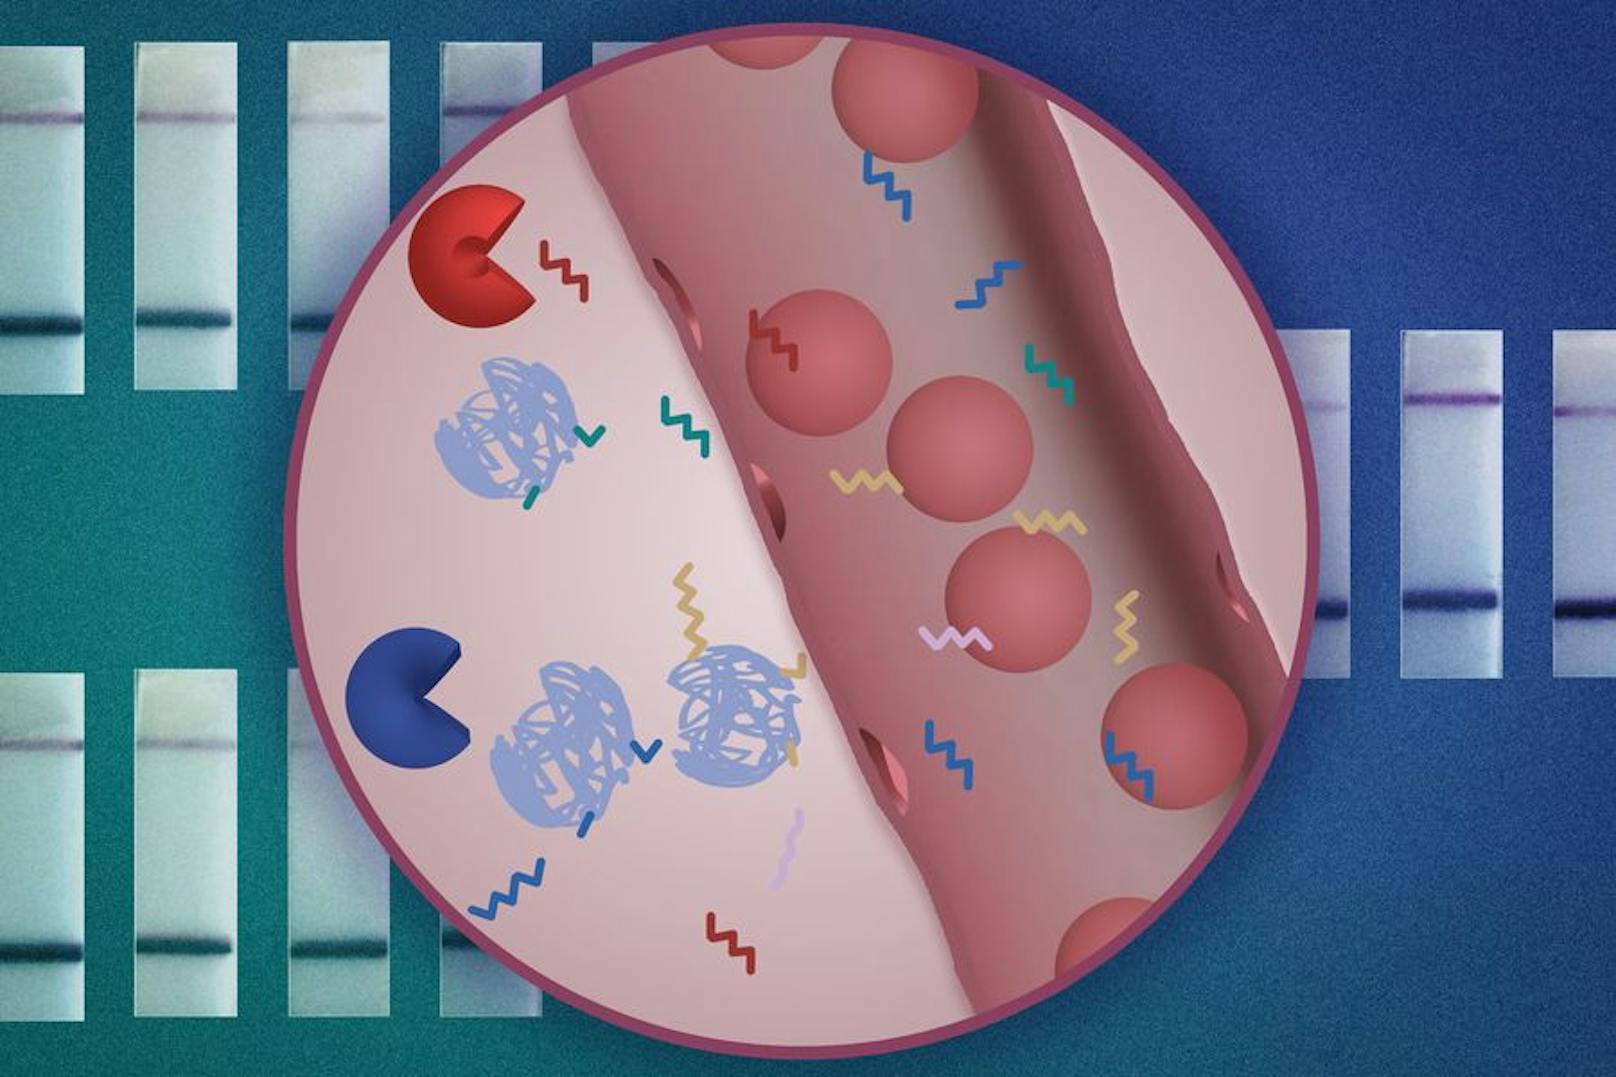 MIT-Ingenieure haben einen neuen Nanopartikelsensor entwickelt, der die Krebsdiagnose mit einem einfachen Urintest ermöglichen kann. Die Nanopartikel (blau) tragen DNA-Barcodes (Zickzacklinien), die von krebsassoziierten Proteasen im Körper gespalten werden können (Pac-Man-Formen). Sobald sie gespalten sind, können die DNA-Barcodes in einer Urinprobe nachgewiesen werden.&nbsp;